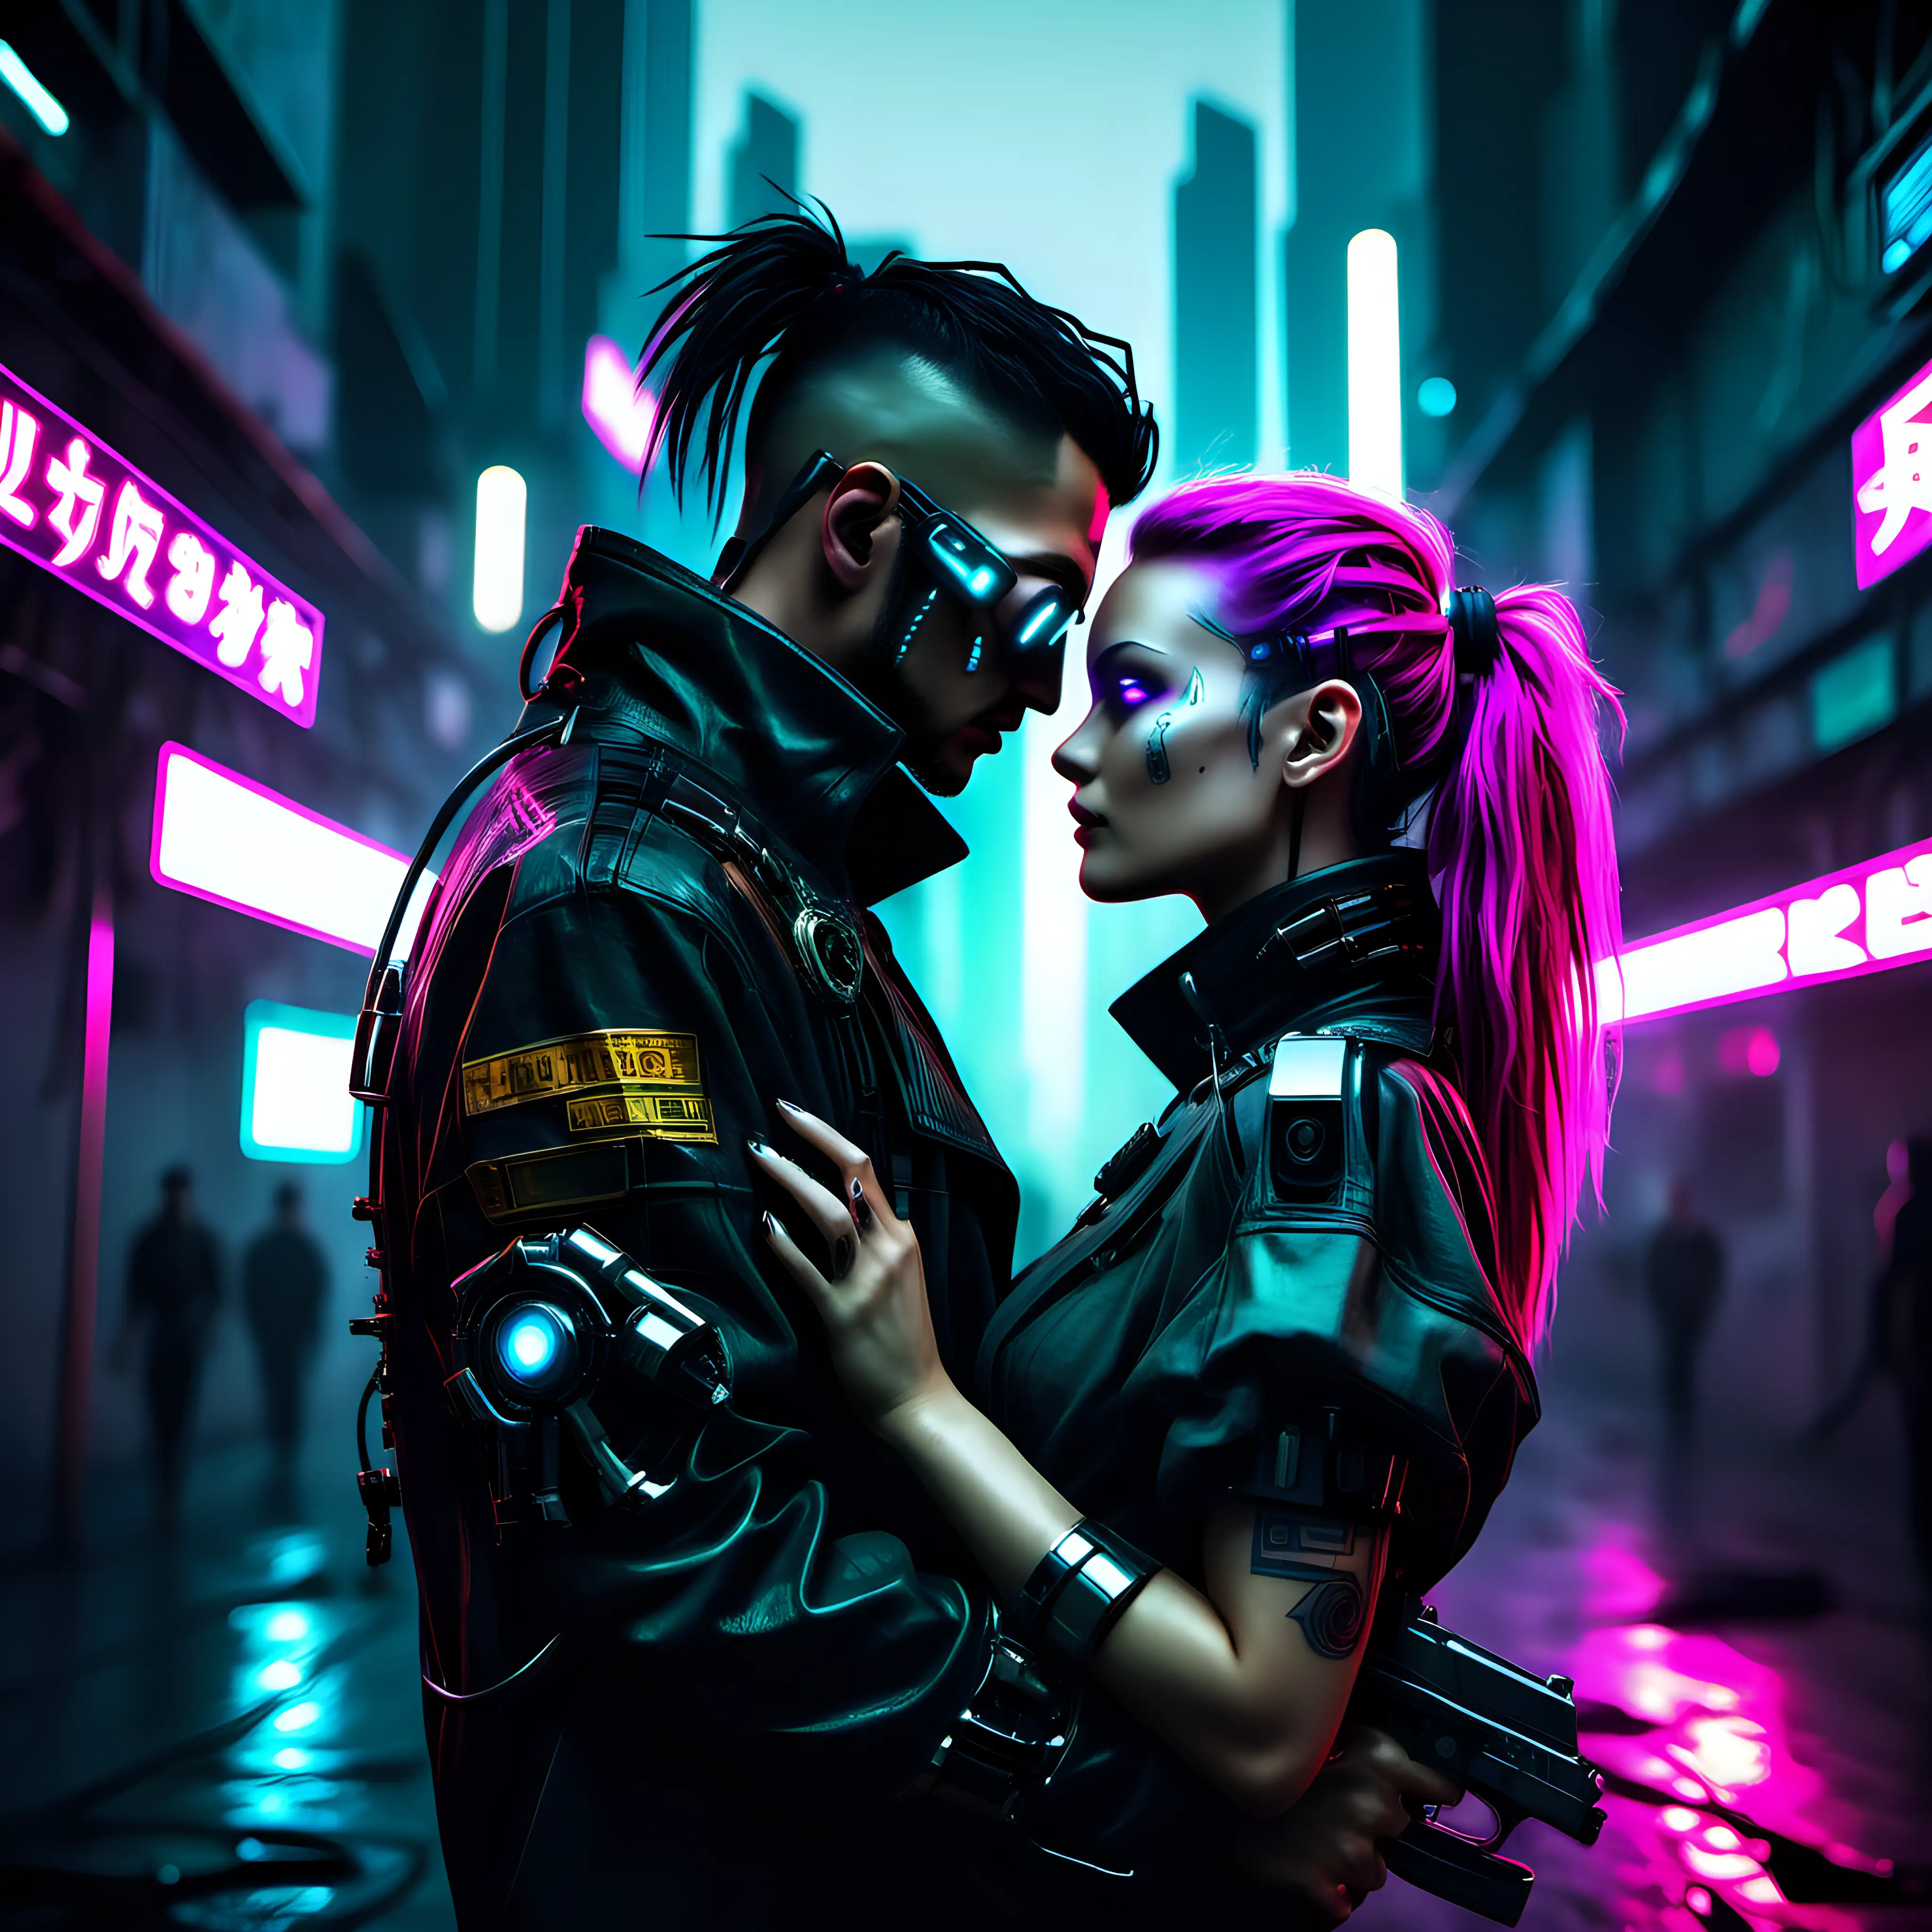 Cyberpunk romantic